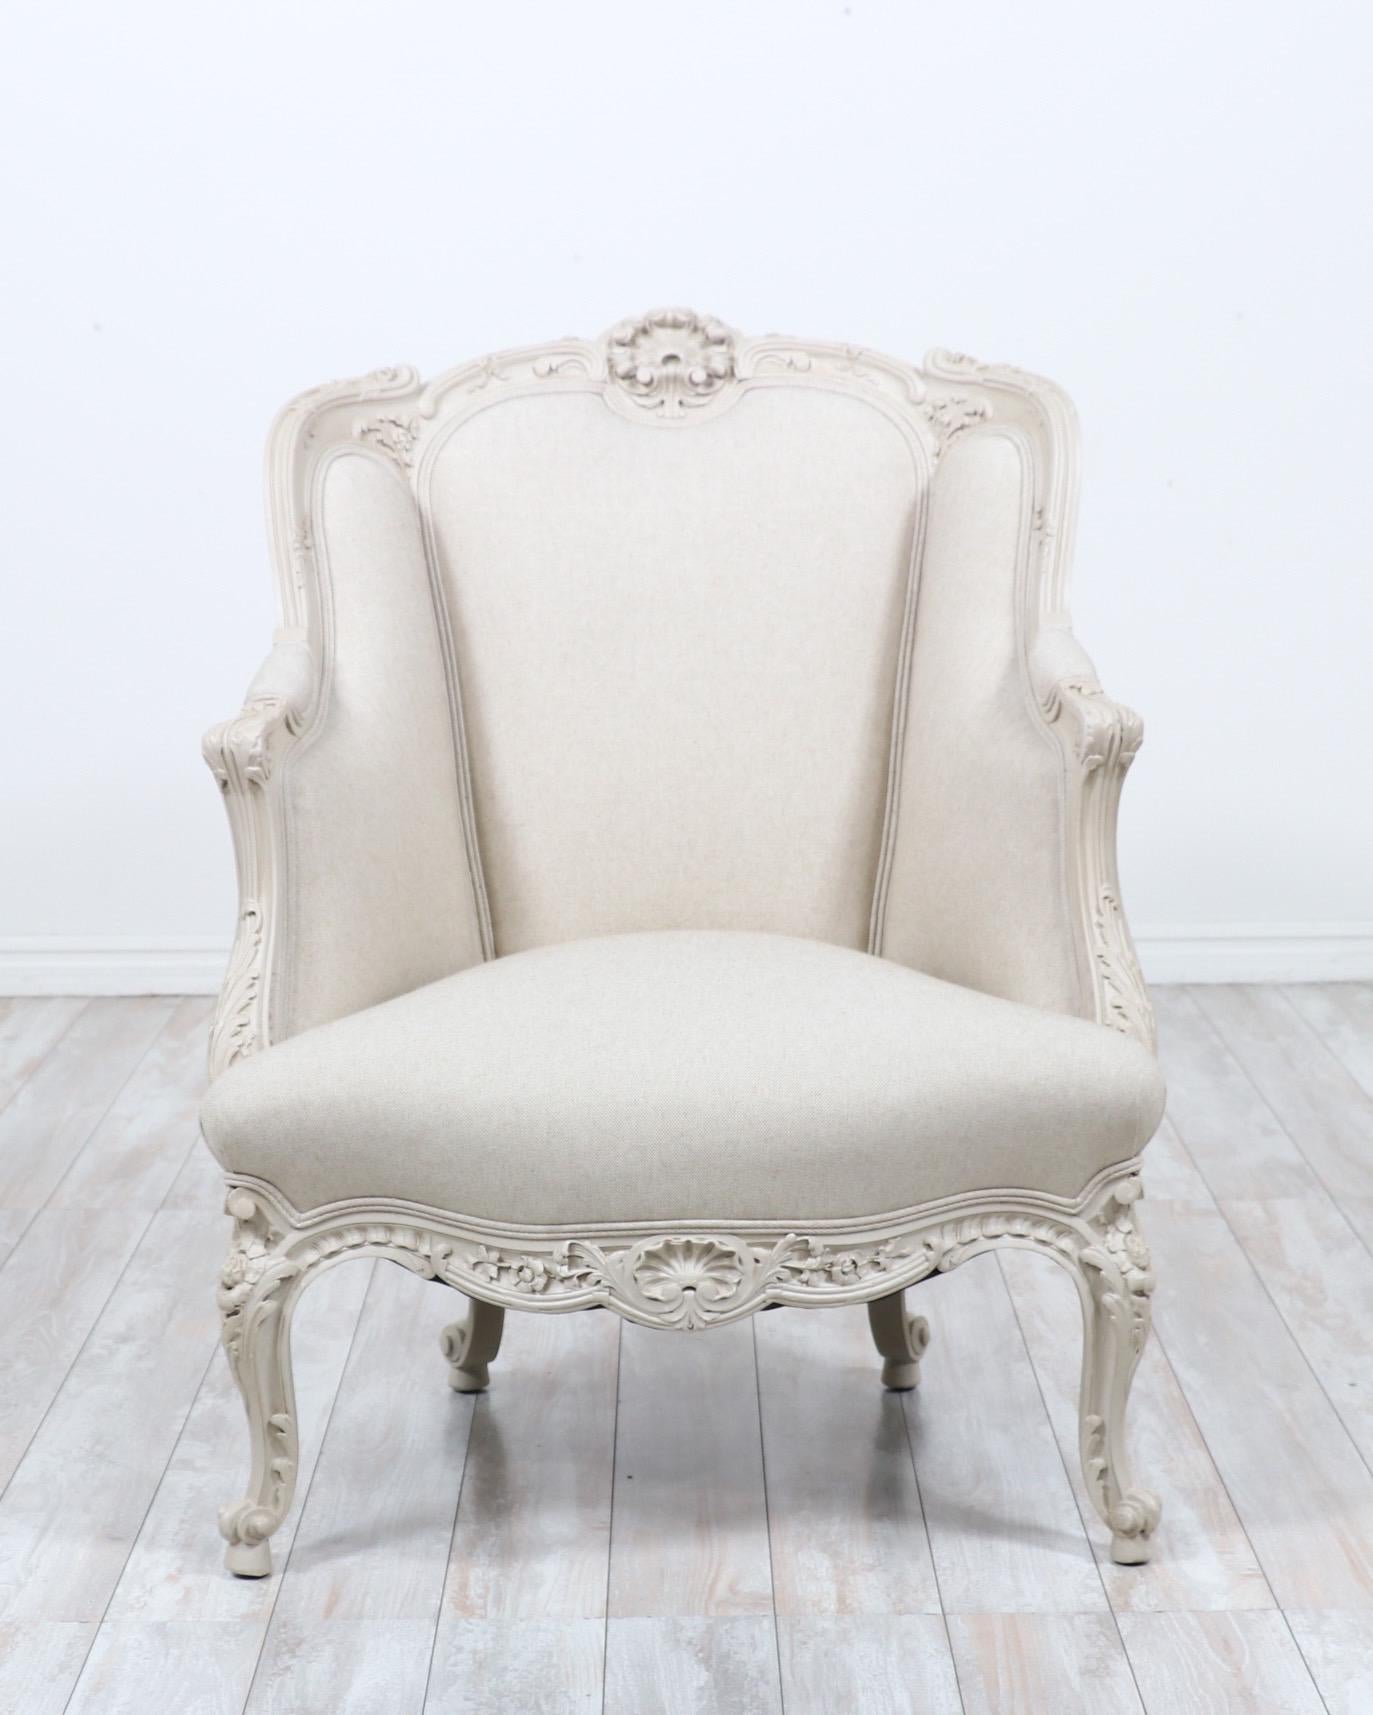 Exquise bergère française peinte des années 1920, de style Louis XV. 

La chaise présente des détails délicatement sculptés, une nouvelle couche de peinture 